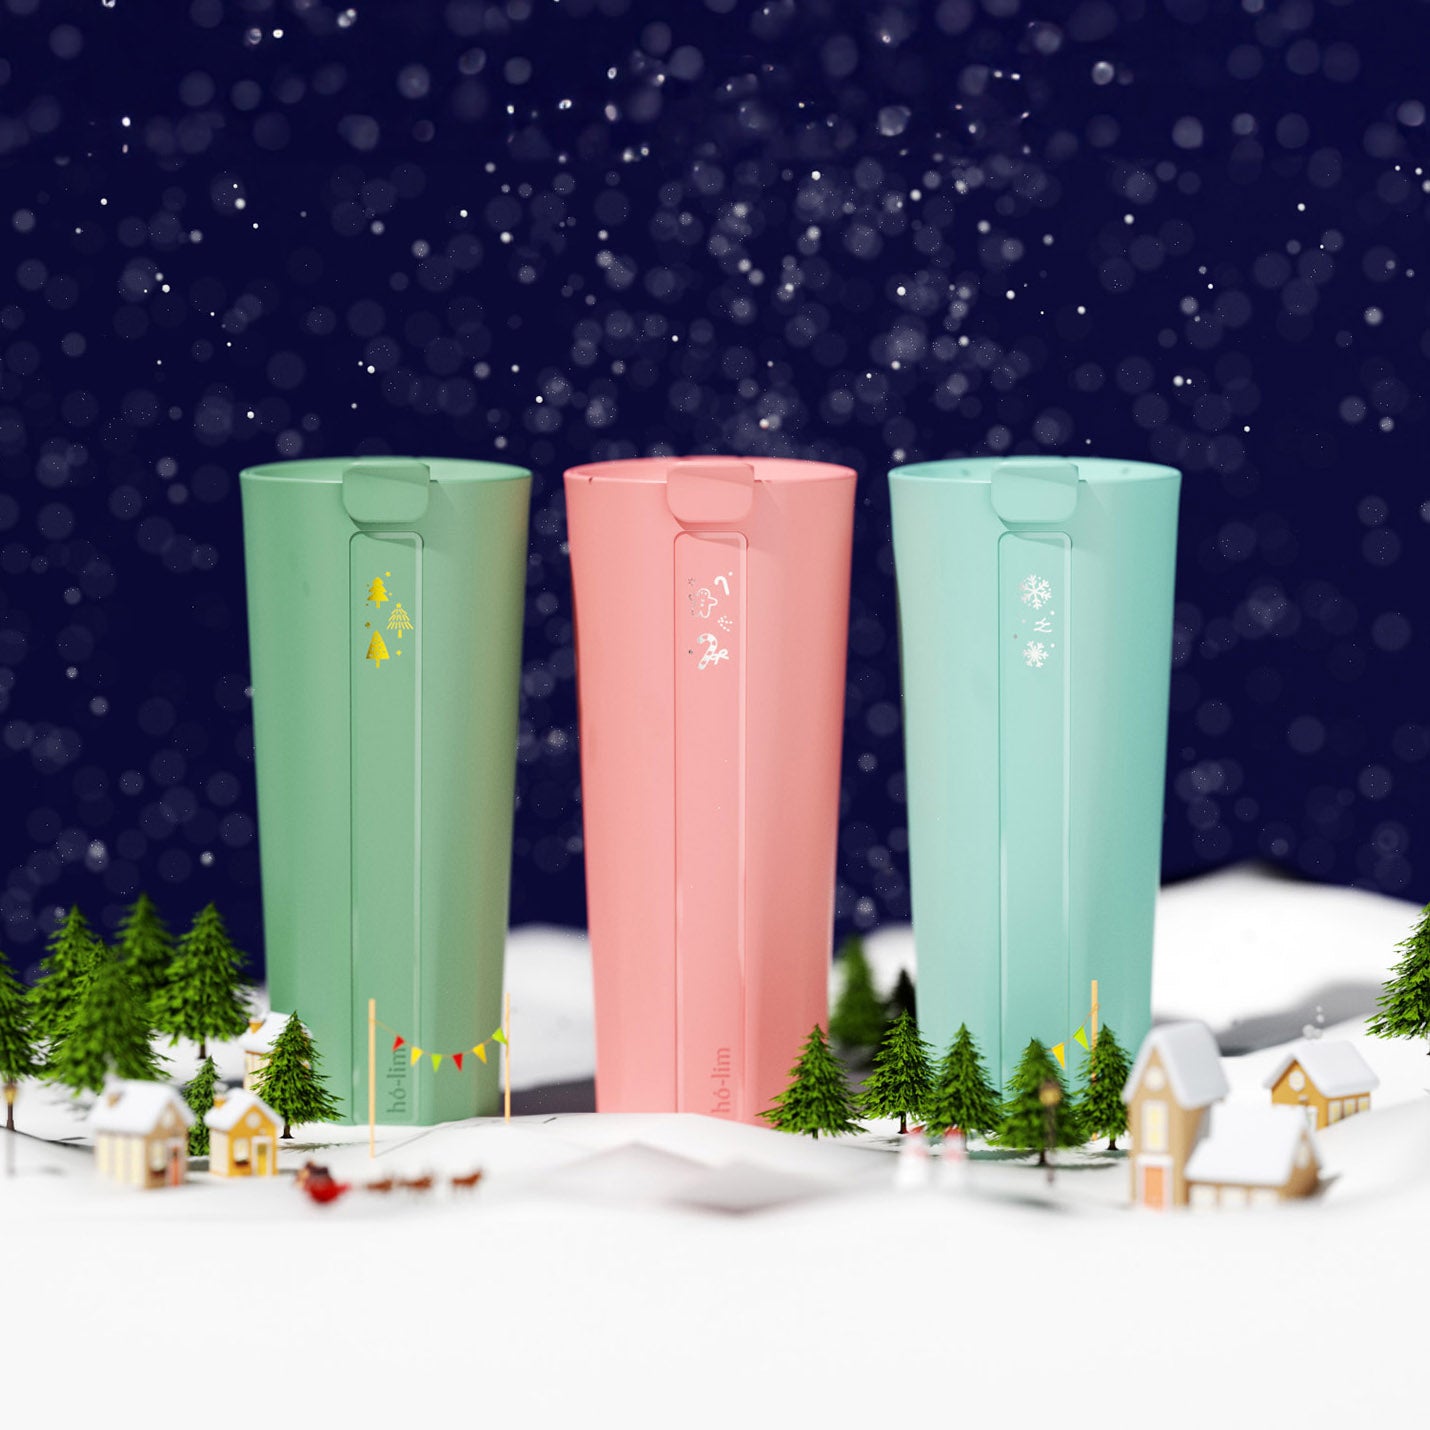 聖誕特別款 / 經典聖誕樹-雅綠 ✦ hó-lim 飲料杯